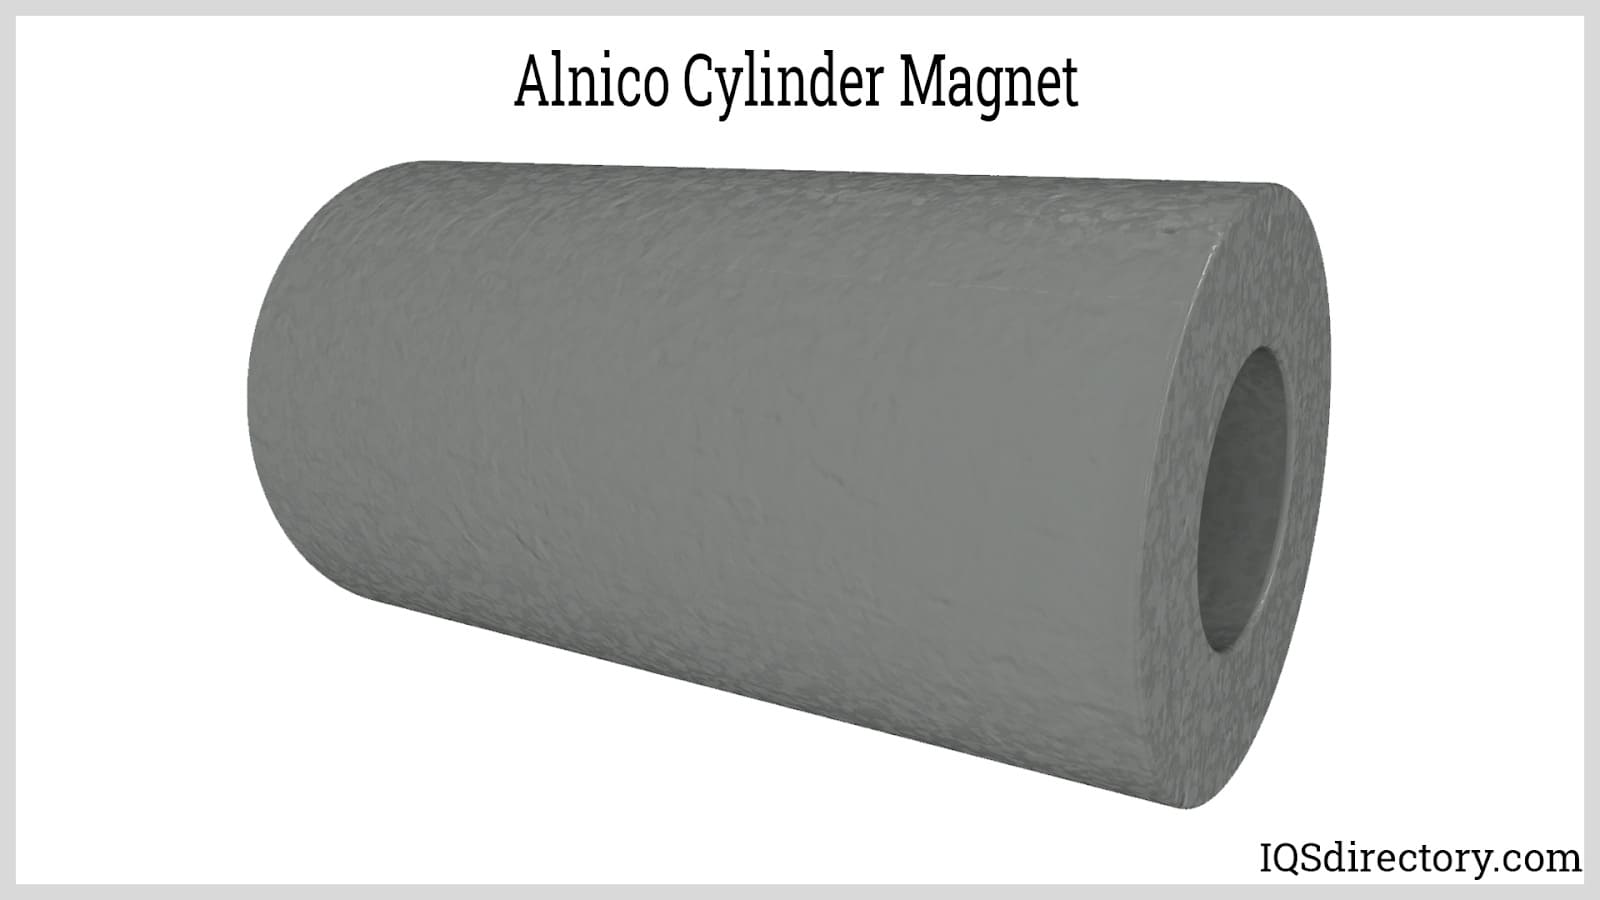 Alnico Cylinder Magnet